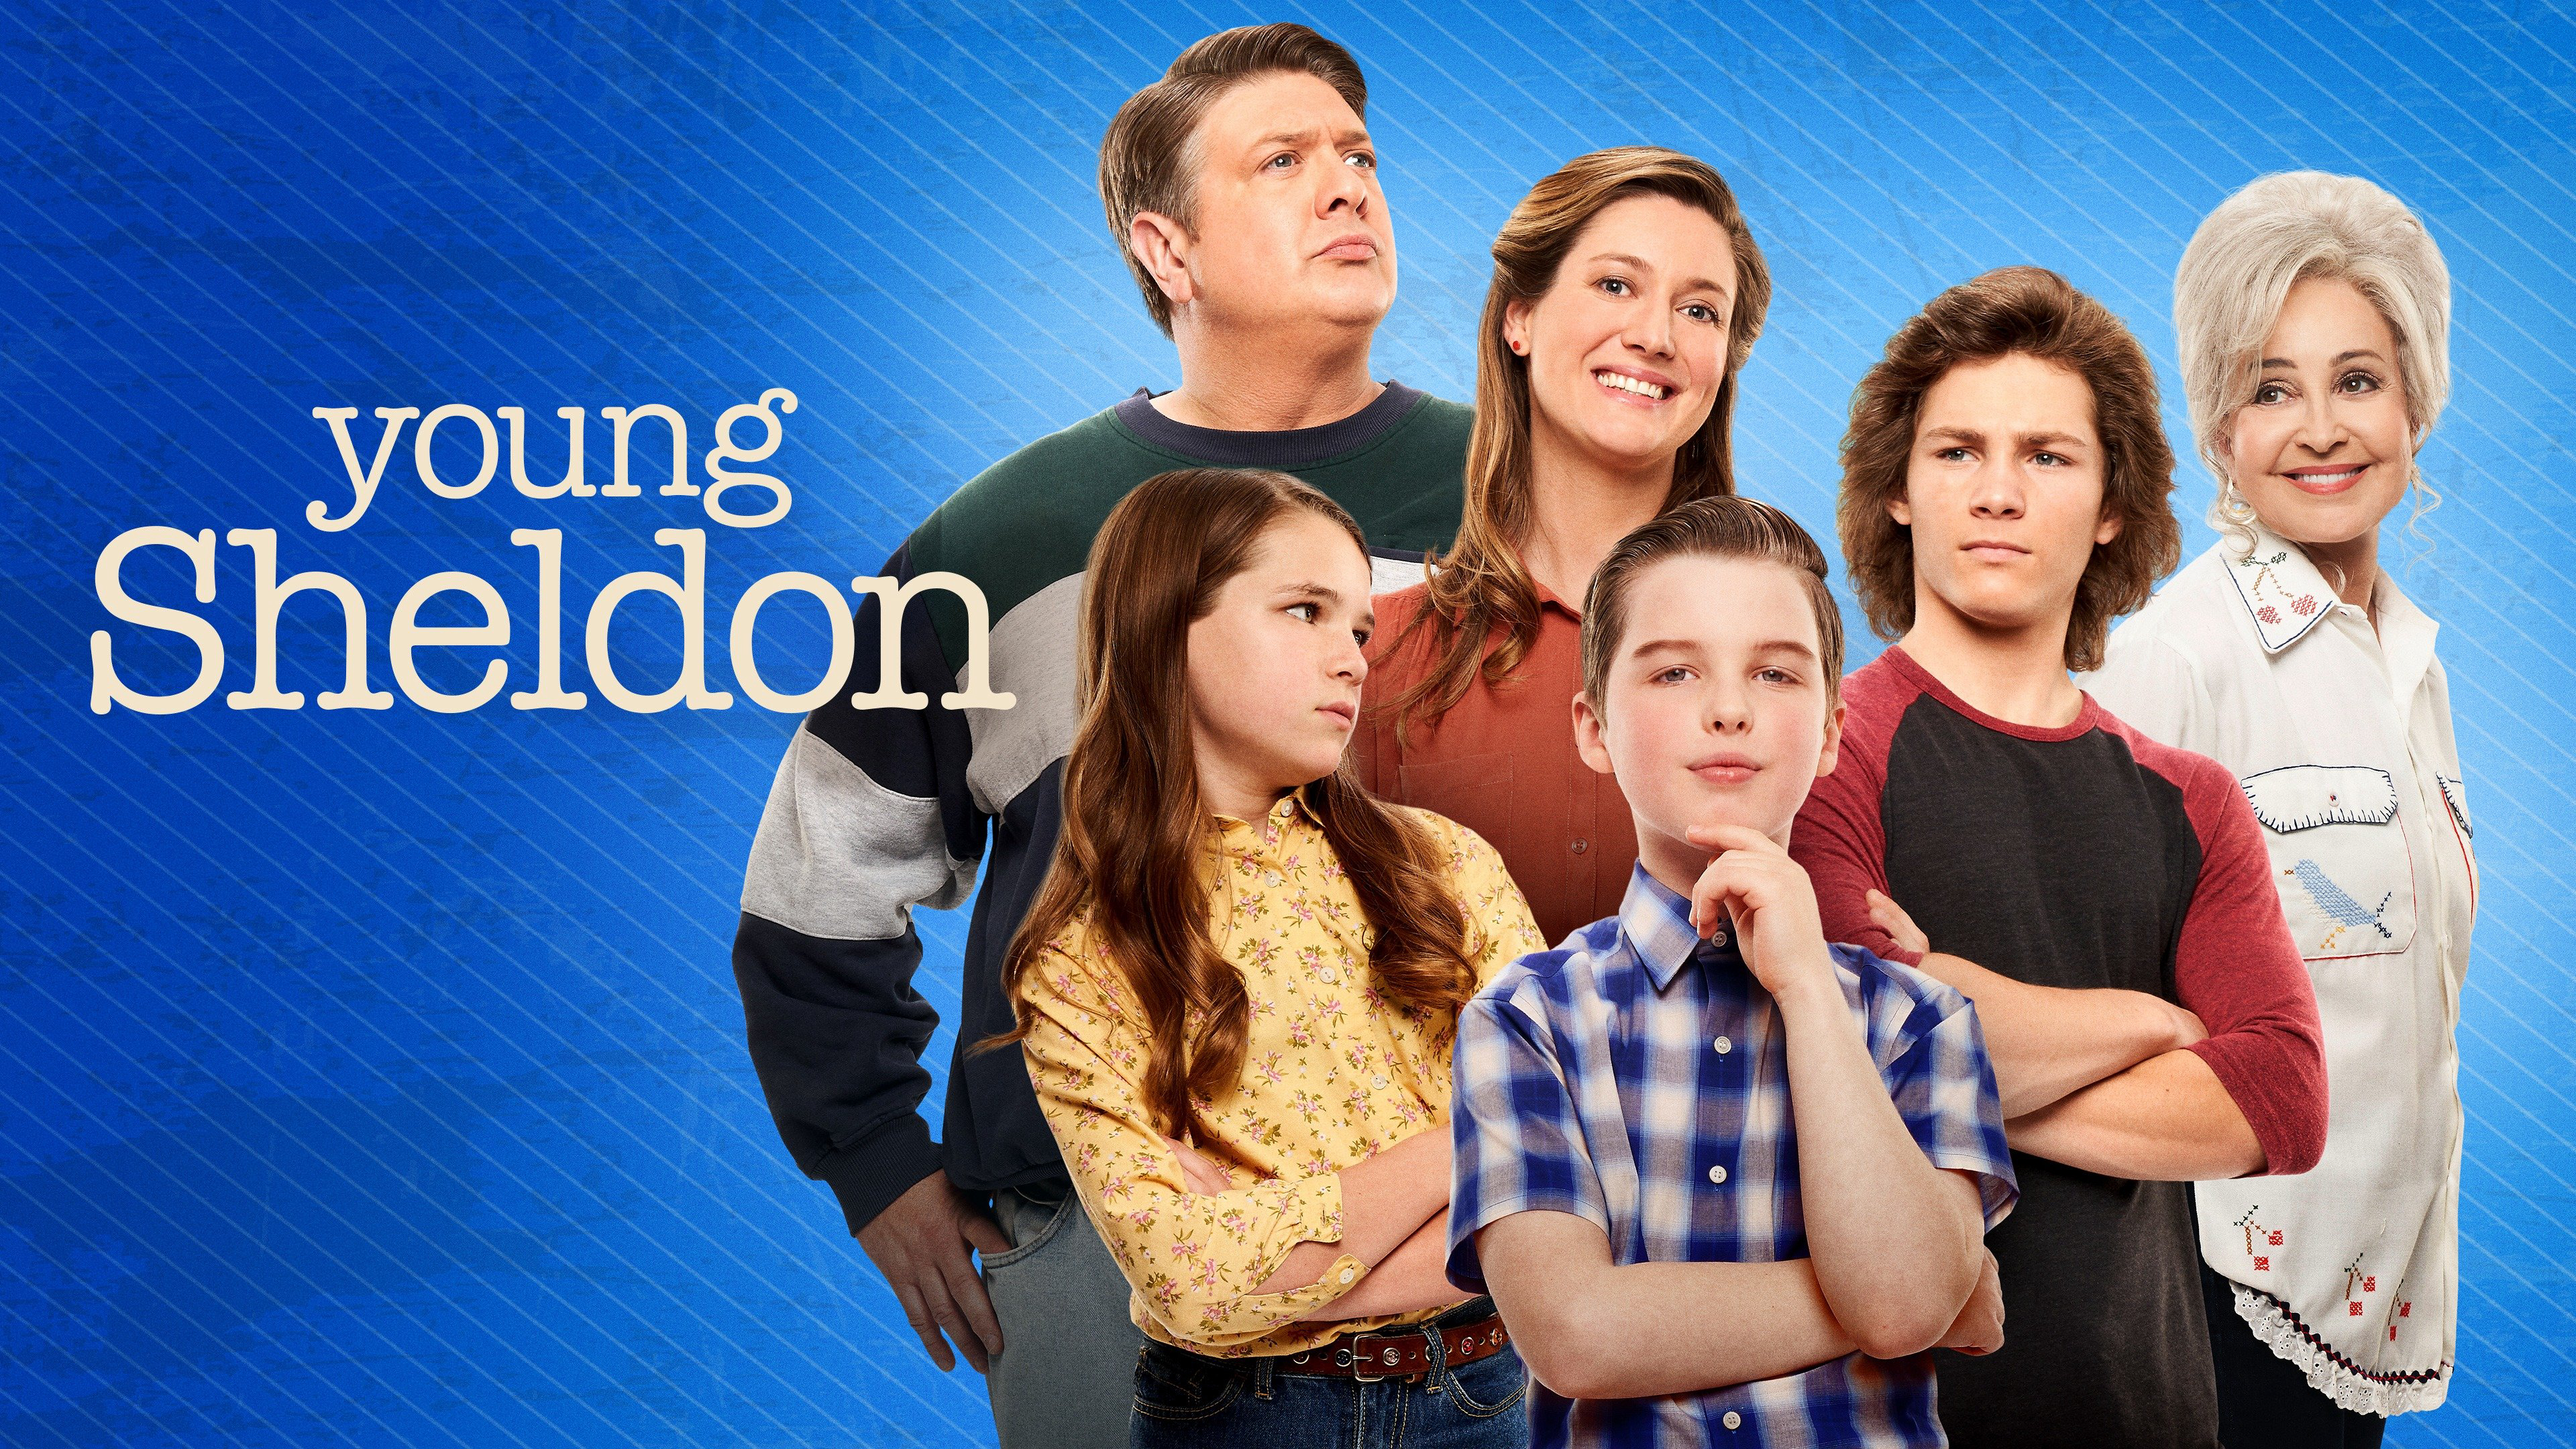 Tuổi Thơ Bá Đạo của Sheldon (Phần 4) - Young Sheldon (Season 4) (2020)